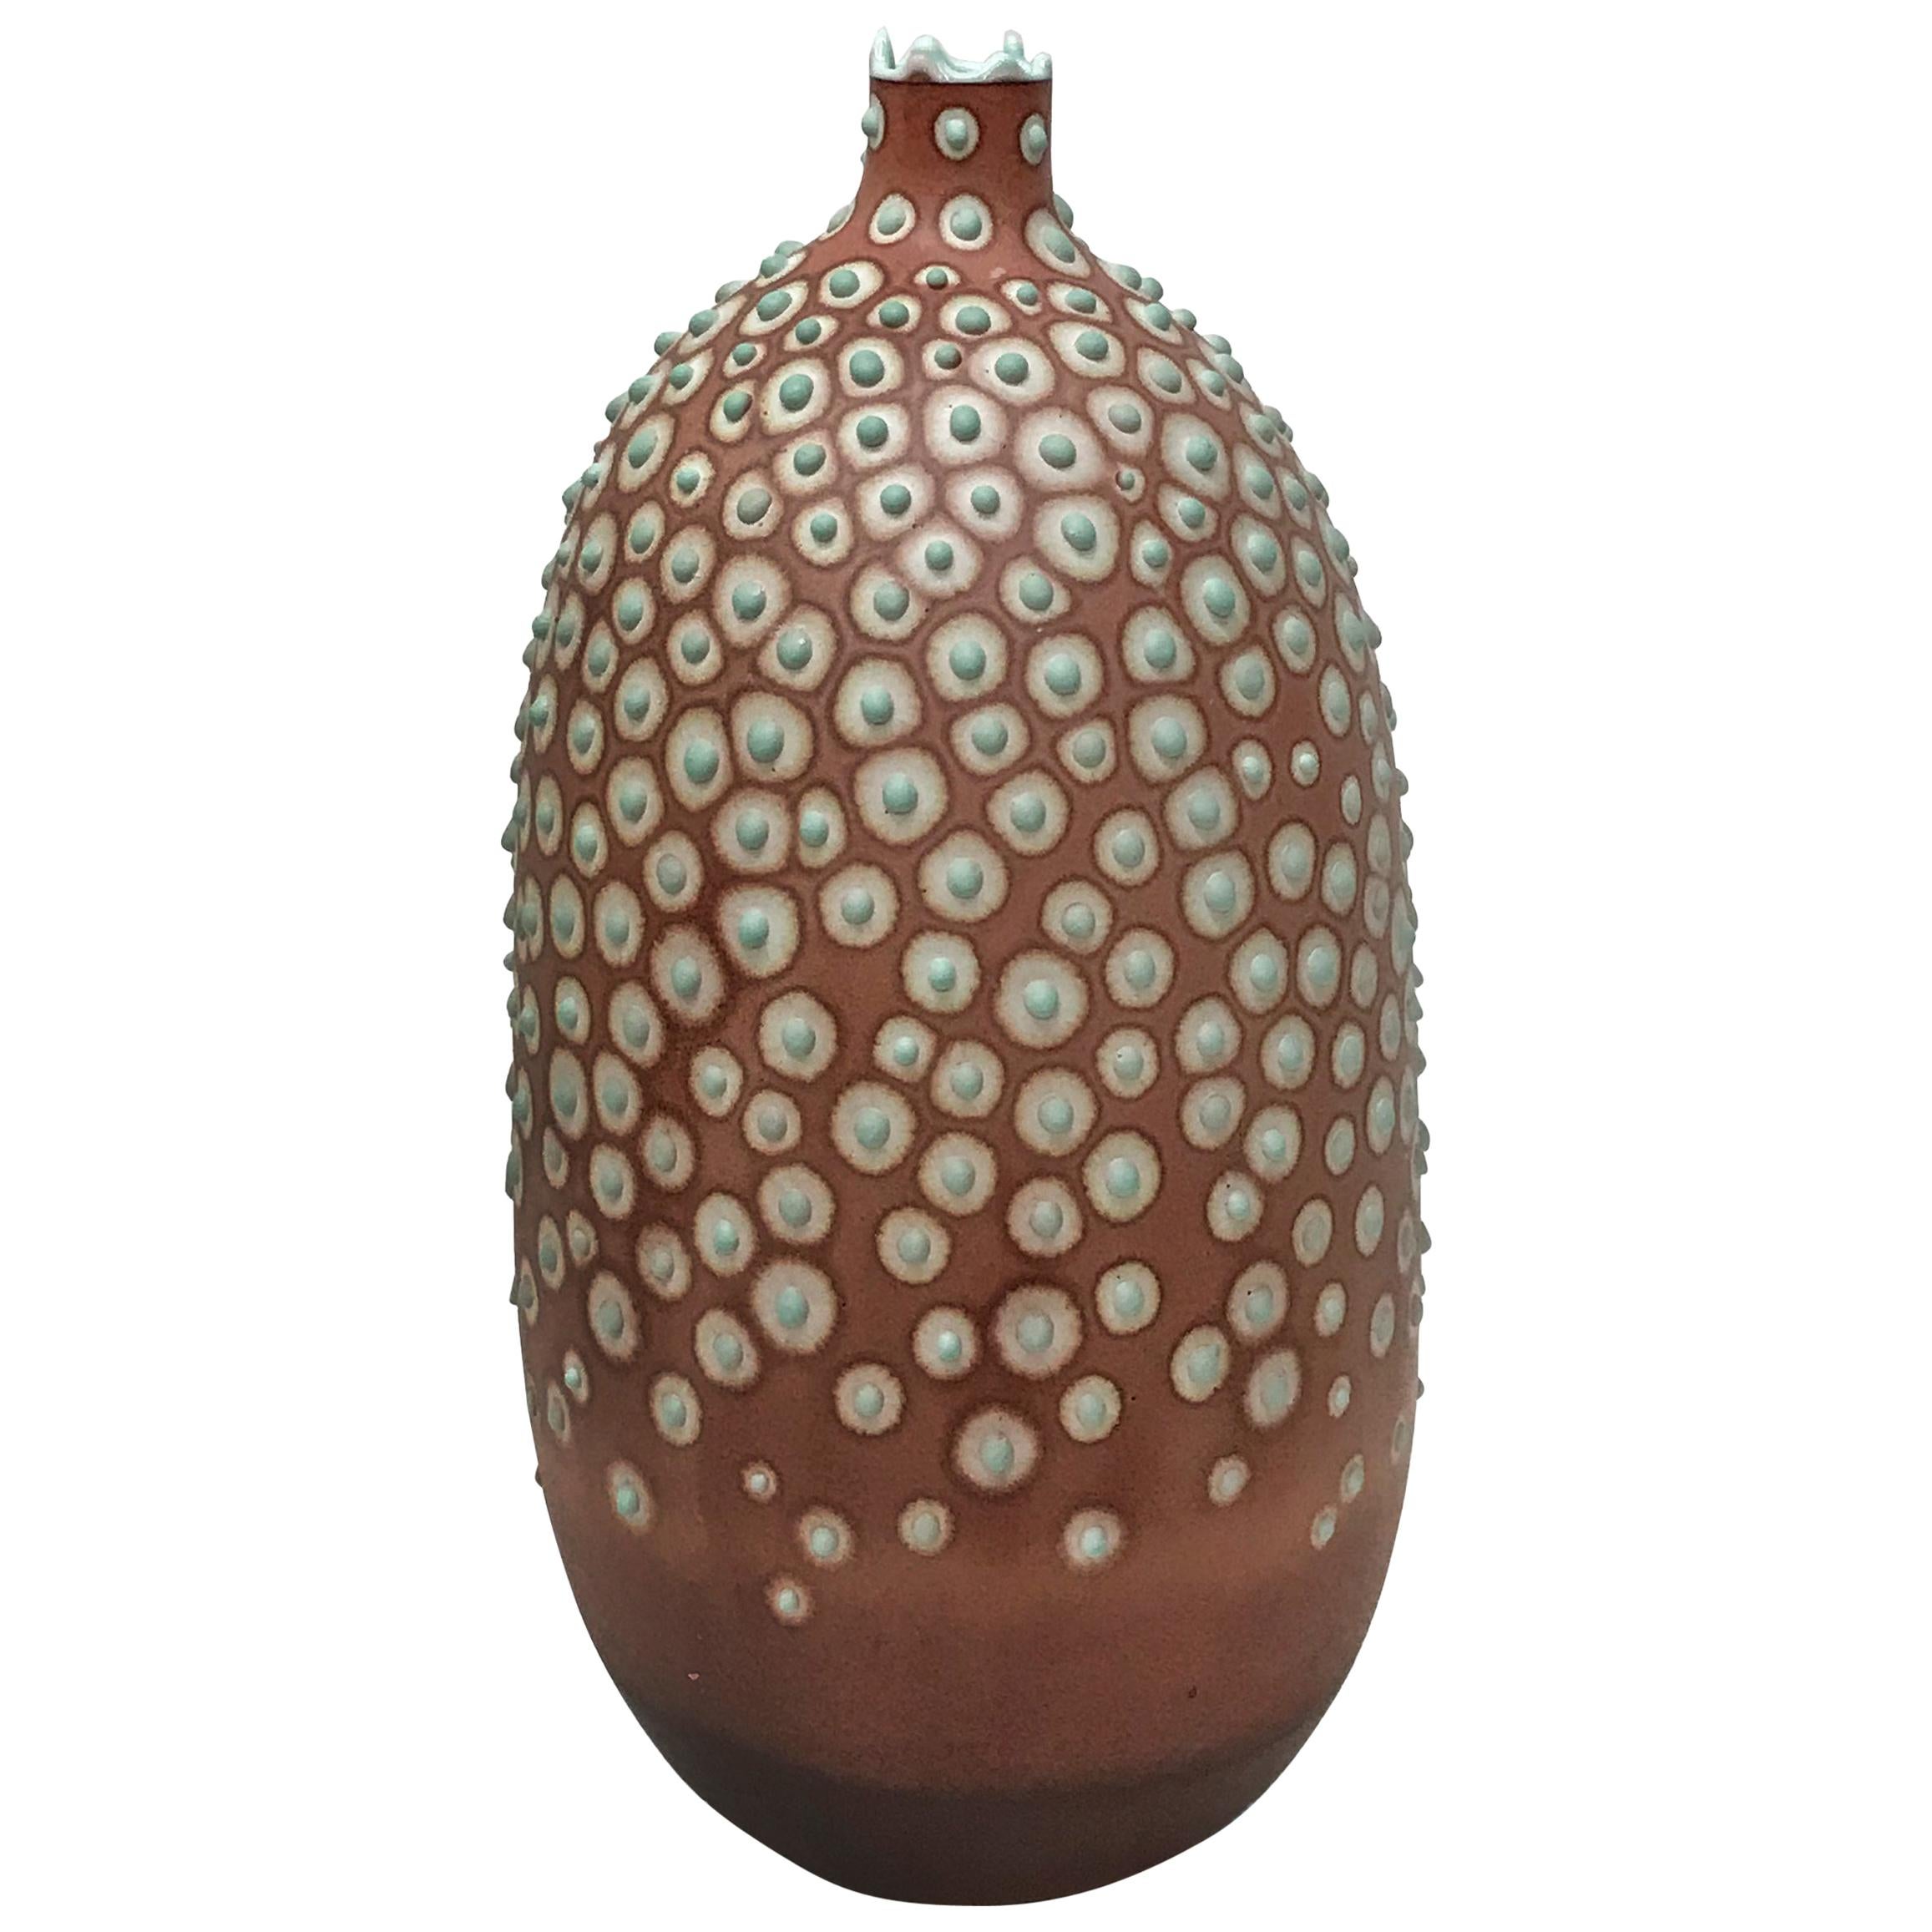 Eine einzigartige handgefertigte längliche Vase des 21. Jahrhunderts in Rost und Mint